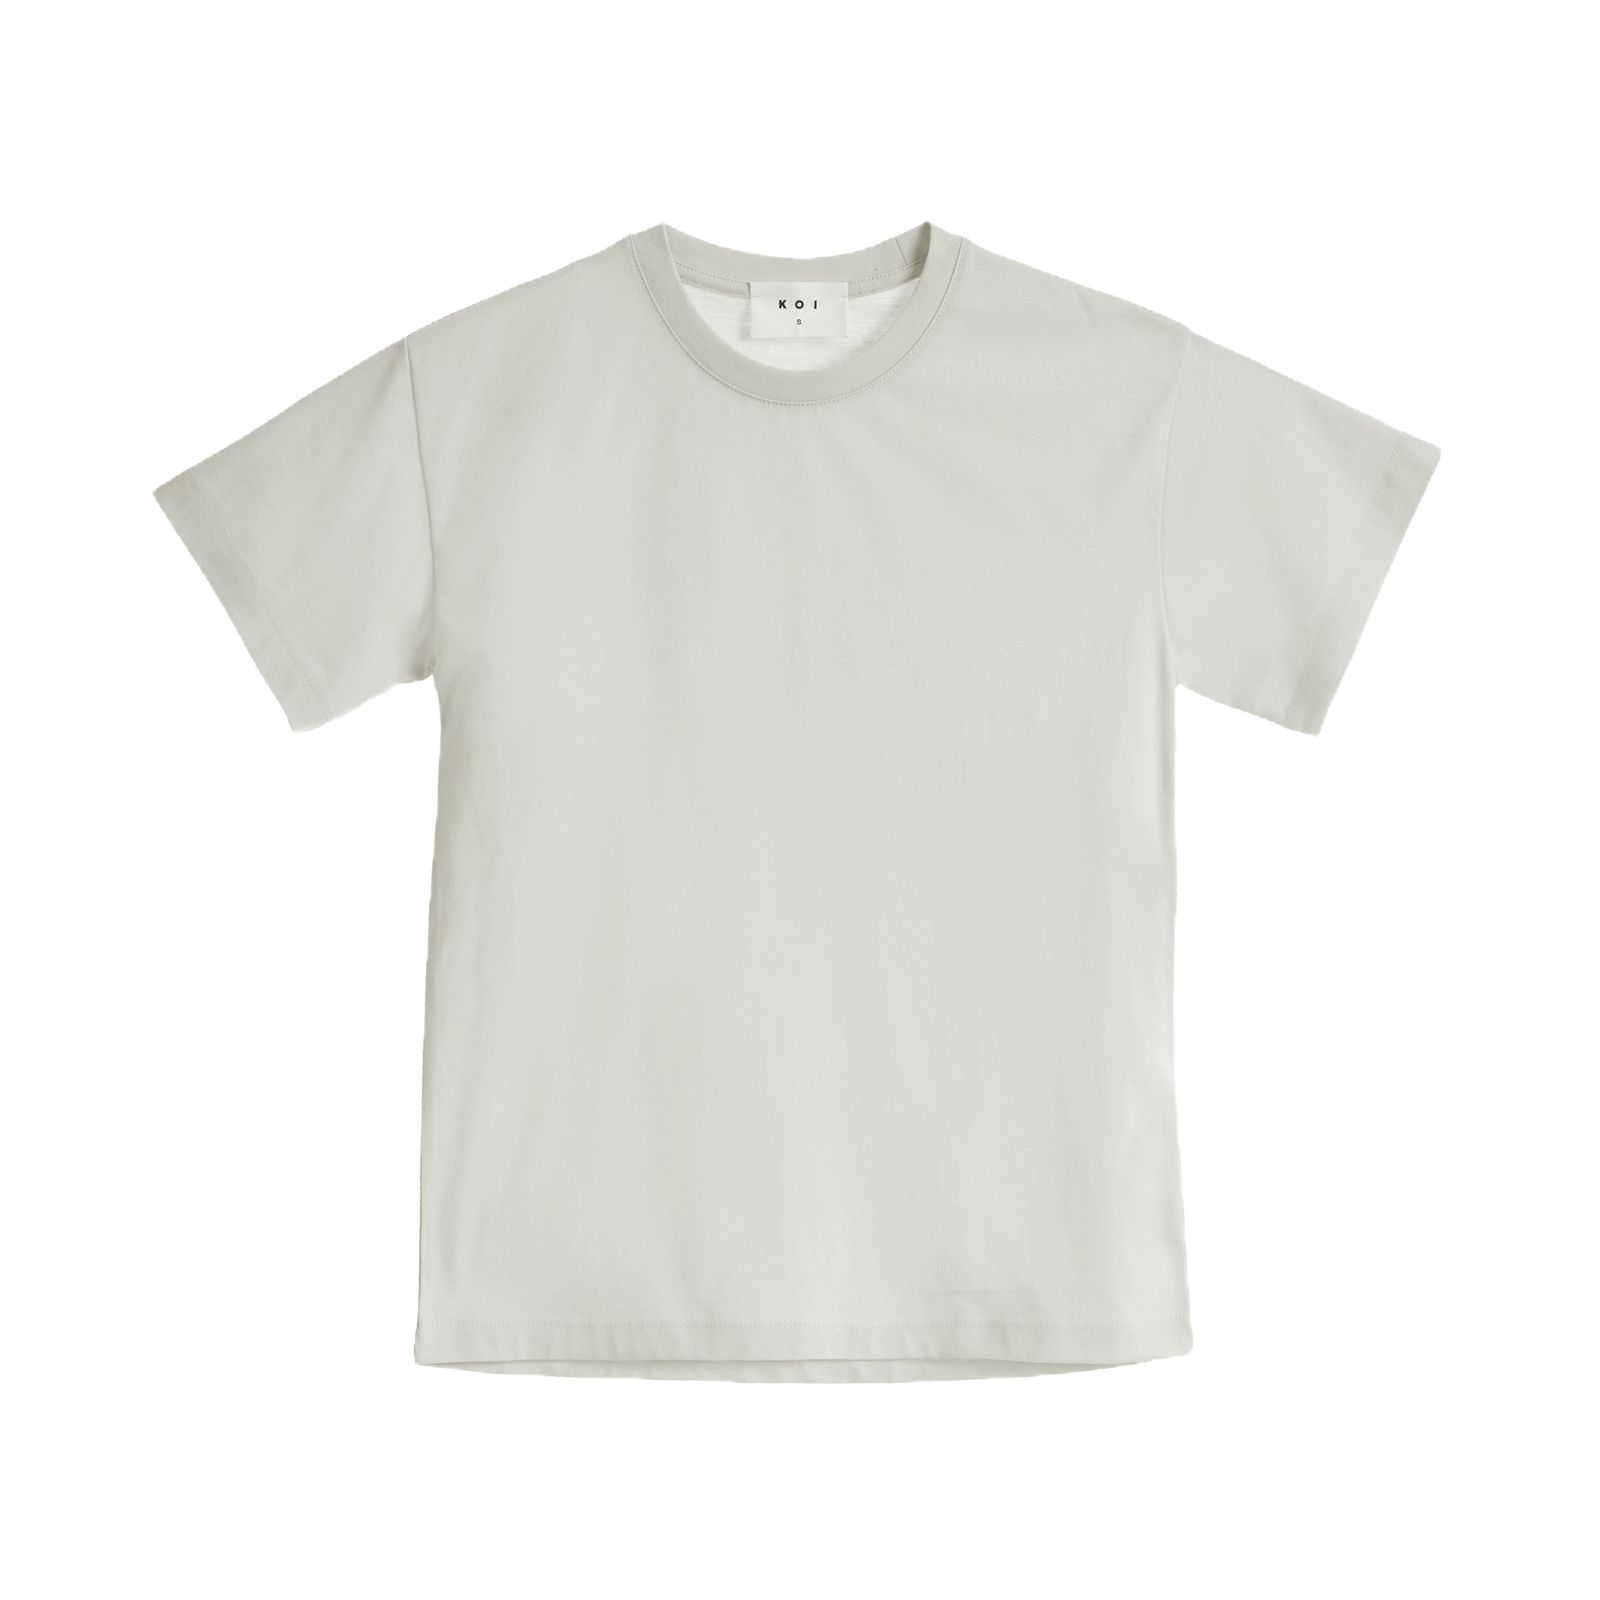 تی شرت آستین کوتاه زنانه کوی مدل هی گرل رنگ سفید -  - 1